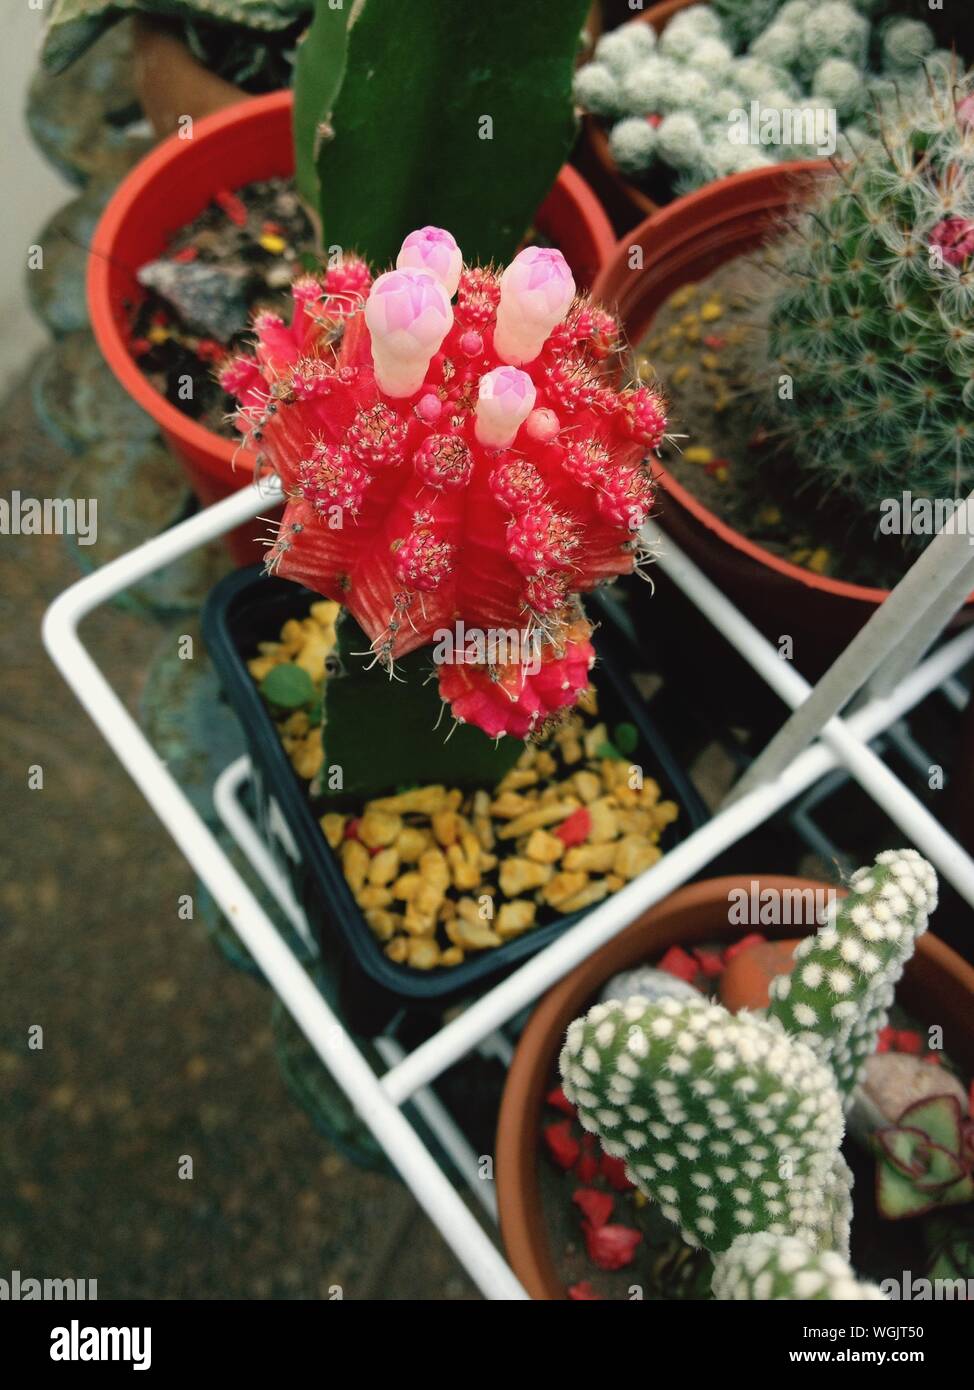 Direkt oberhalb der roten Kaktus Blumen Stockfoto